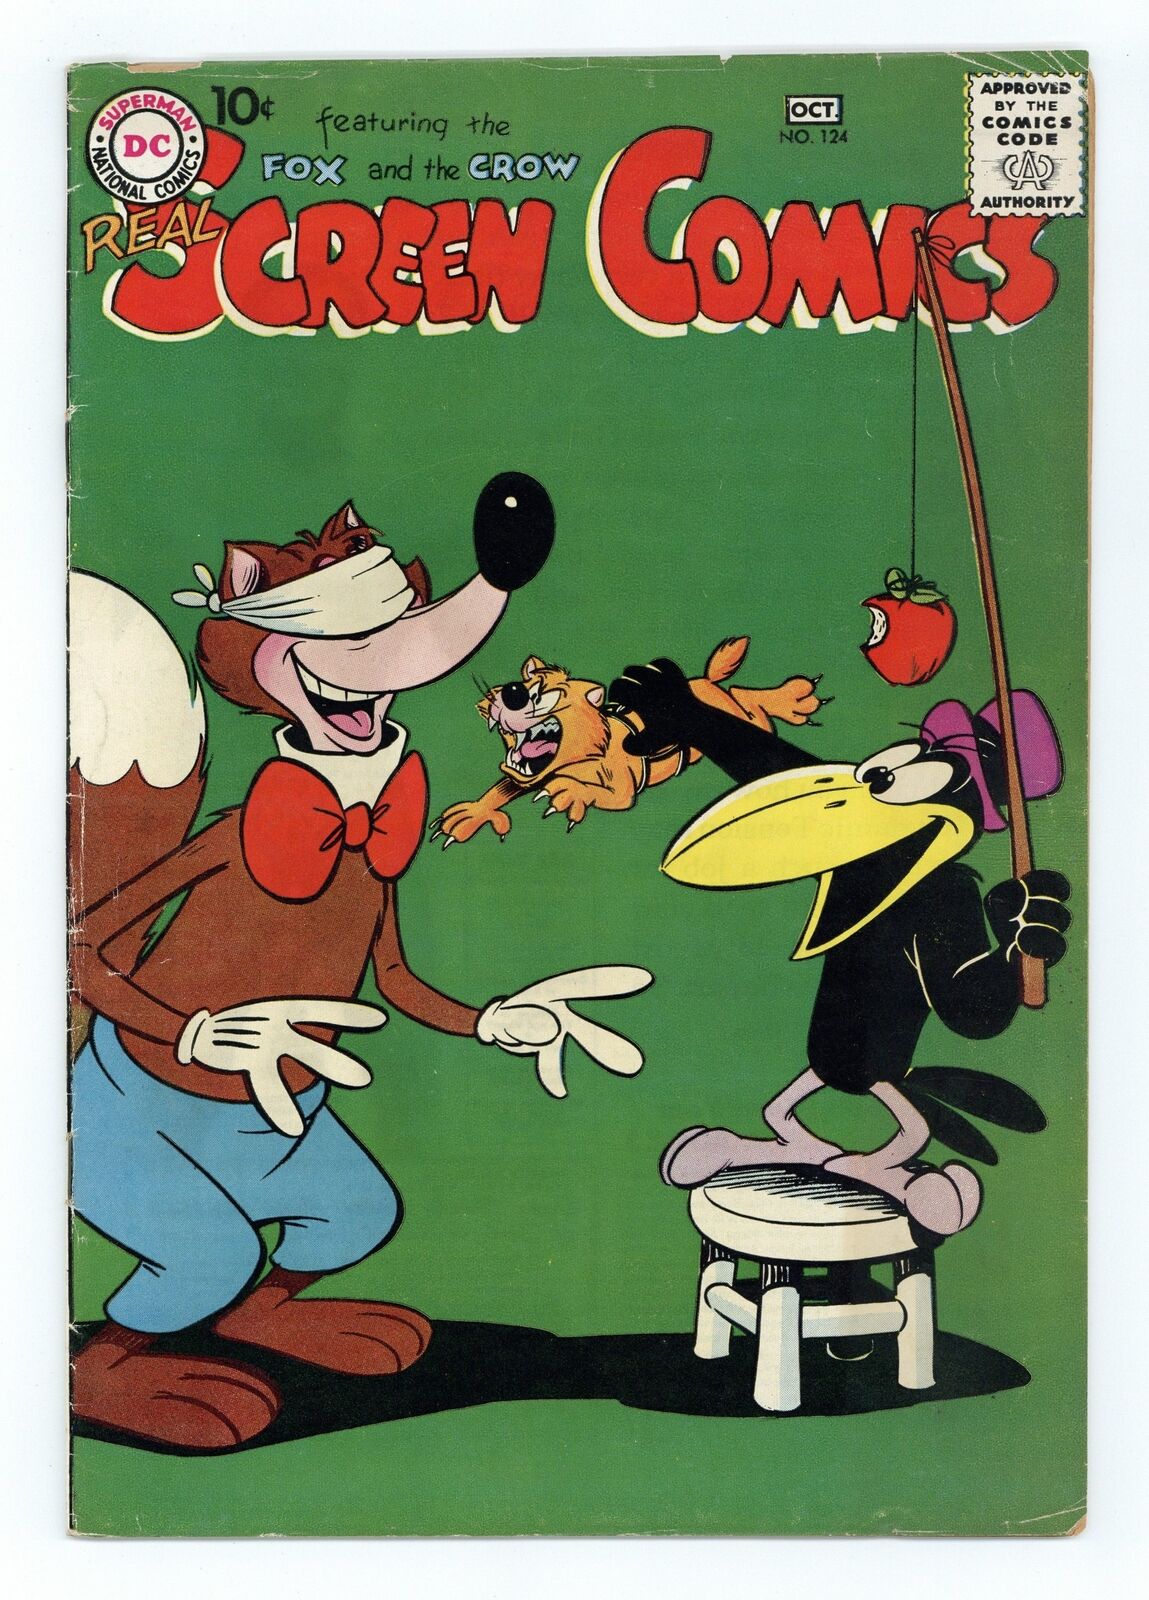 Real Screen Comics #124 VG- 3.5 1958